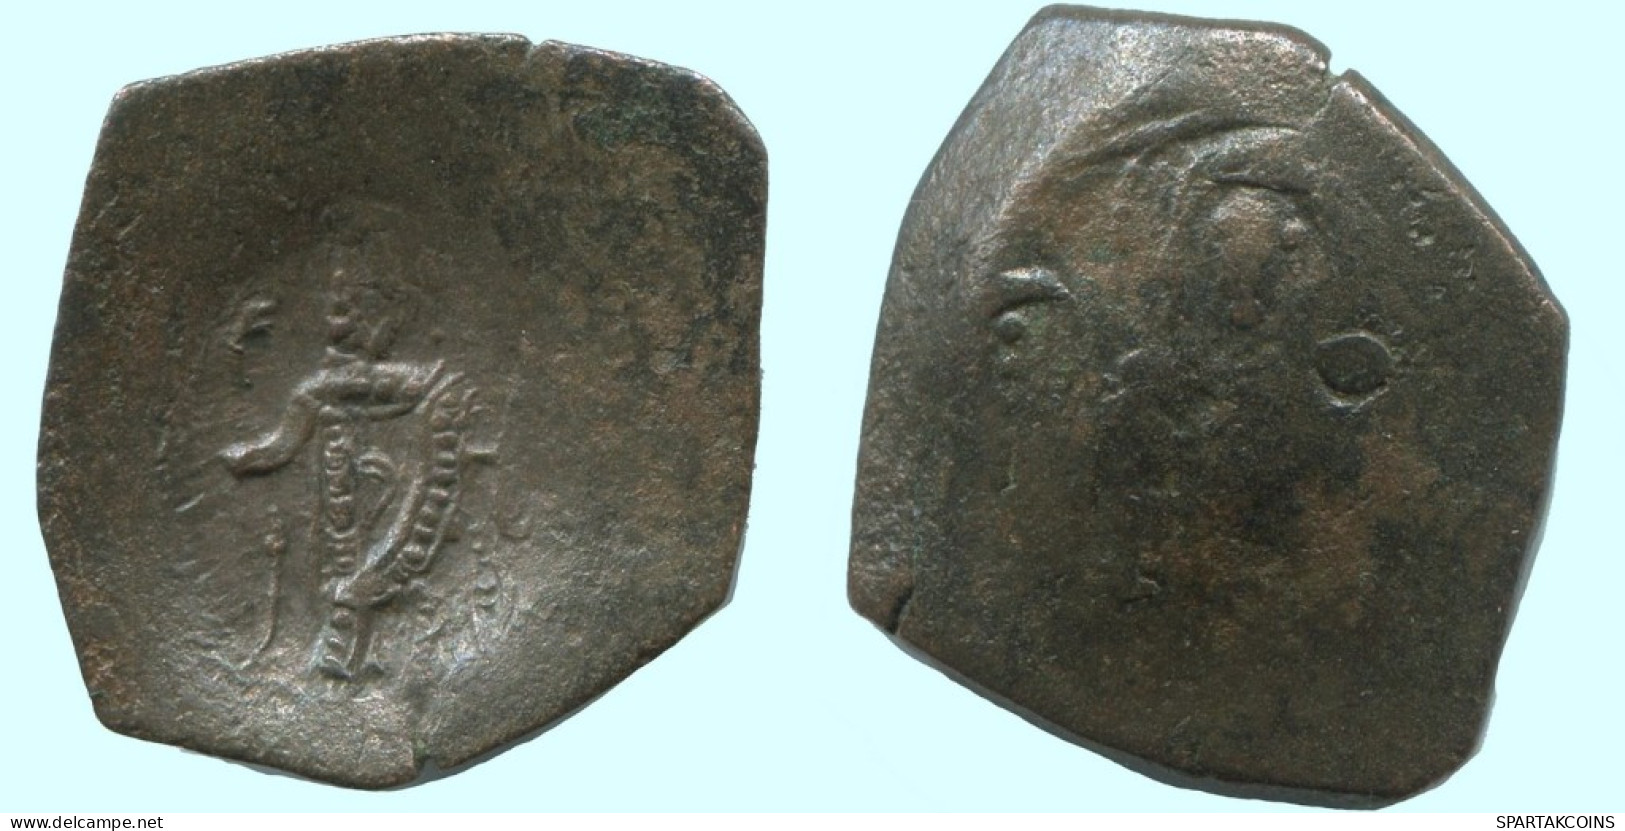 TRACHY BYZANTINISCHE Münze  EMPIRE Antike Authentisch Münze 1.6g/20mm #AG638.4.D.A - Bizantine